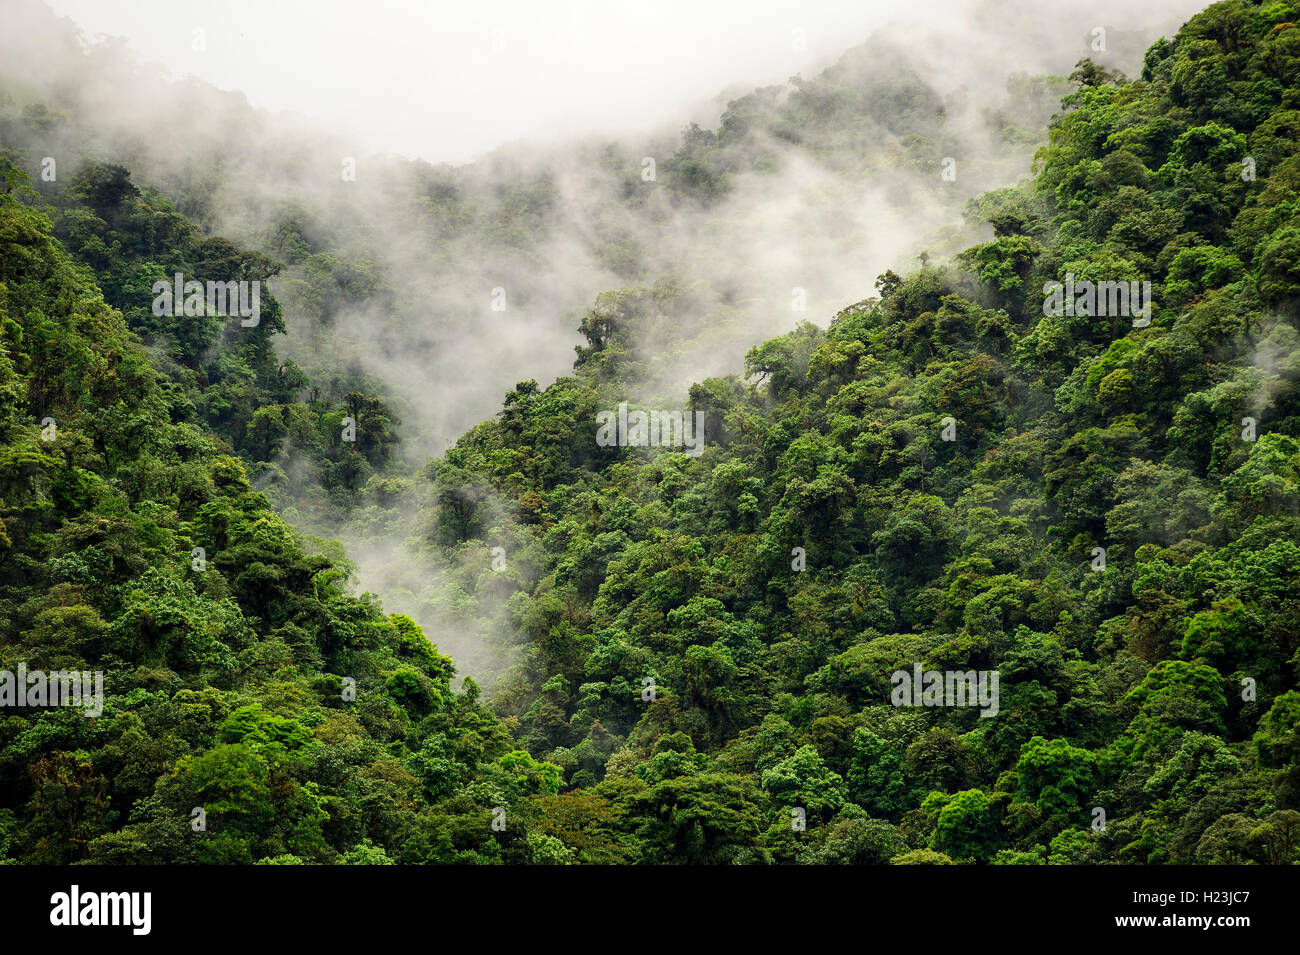 Espesa selva, niebla, el bosque nublado del Parque Nacional Braulio Carrillo, Costa Rica Foto de stock